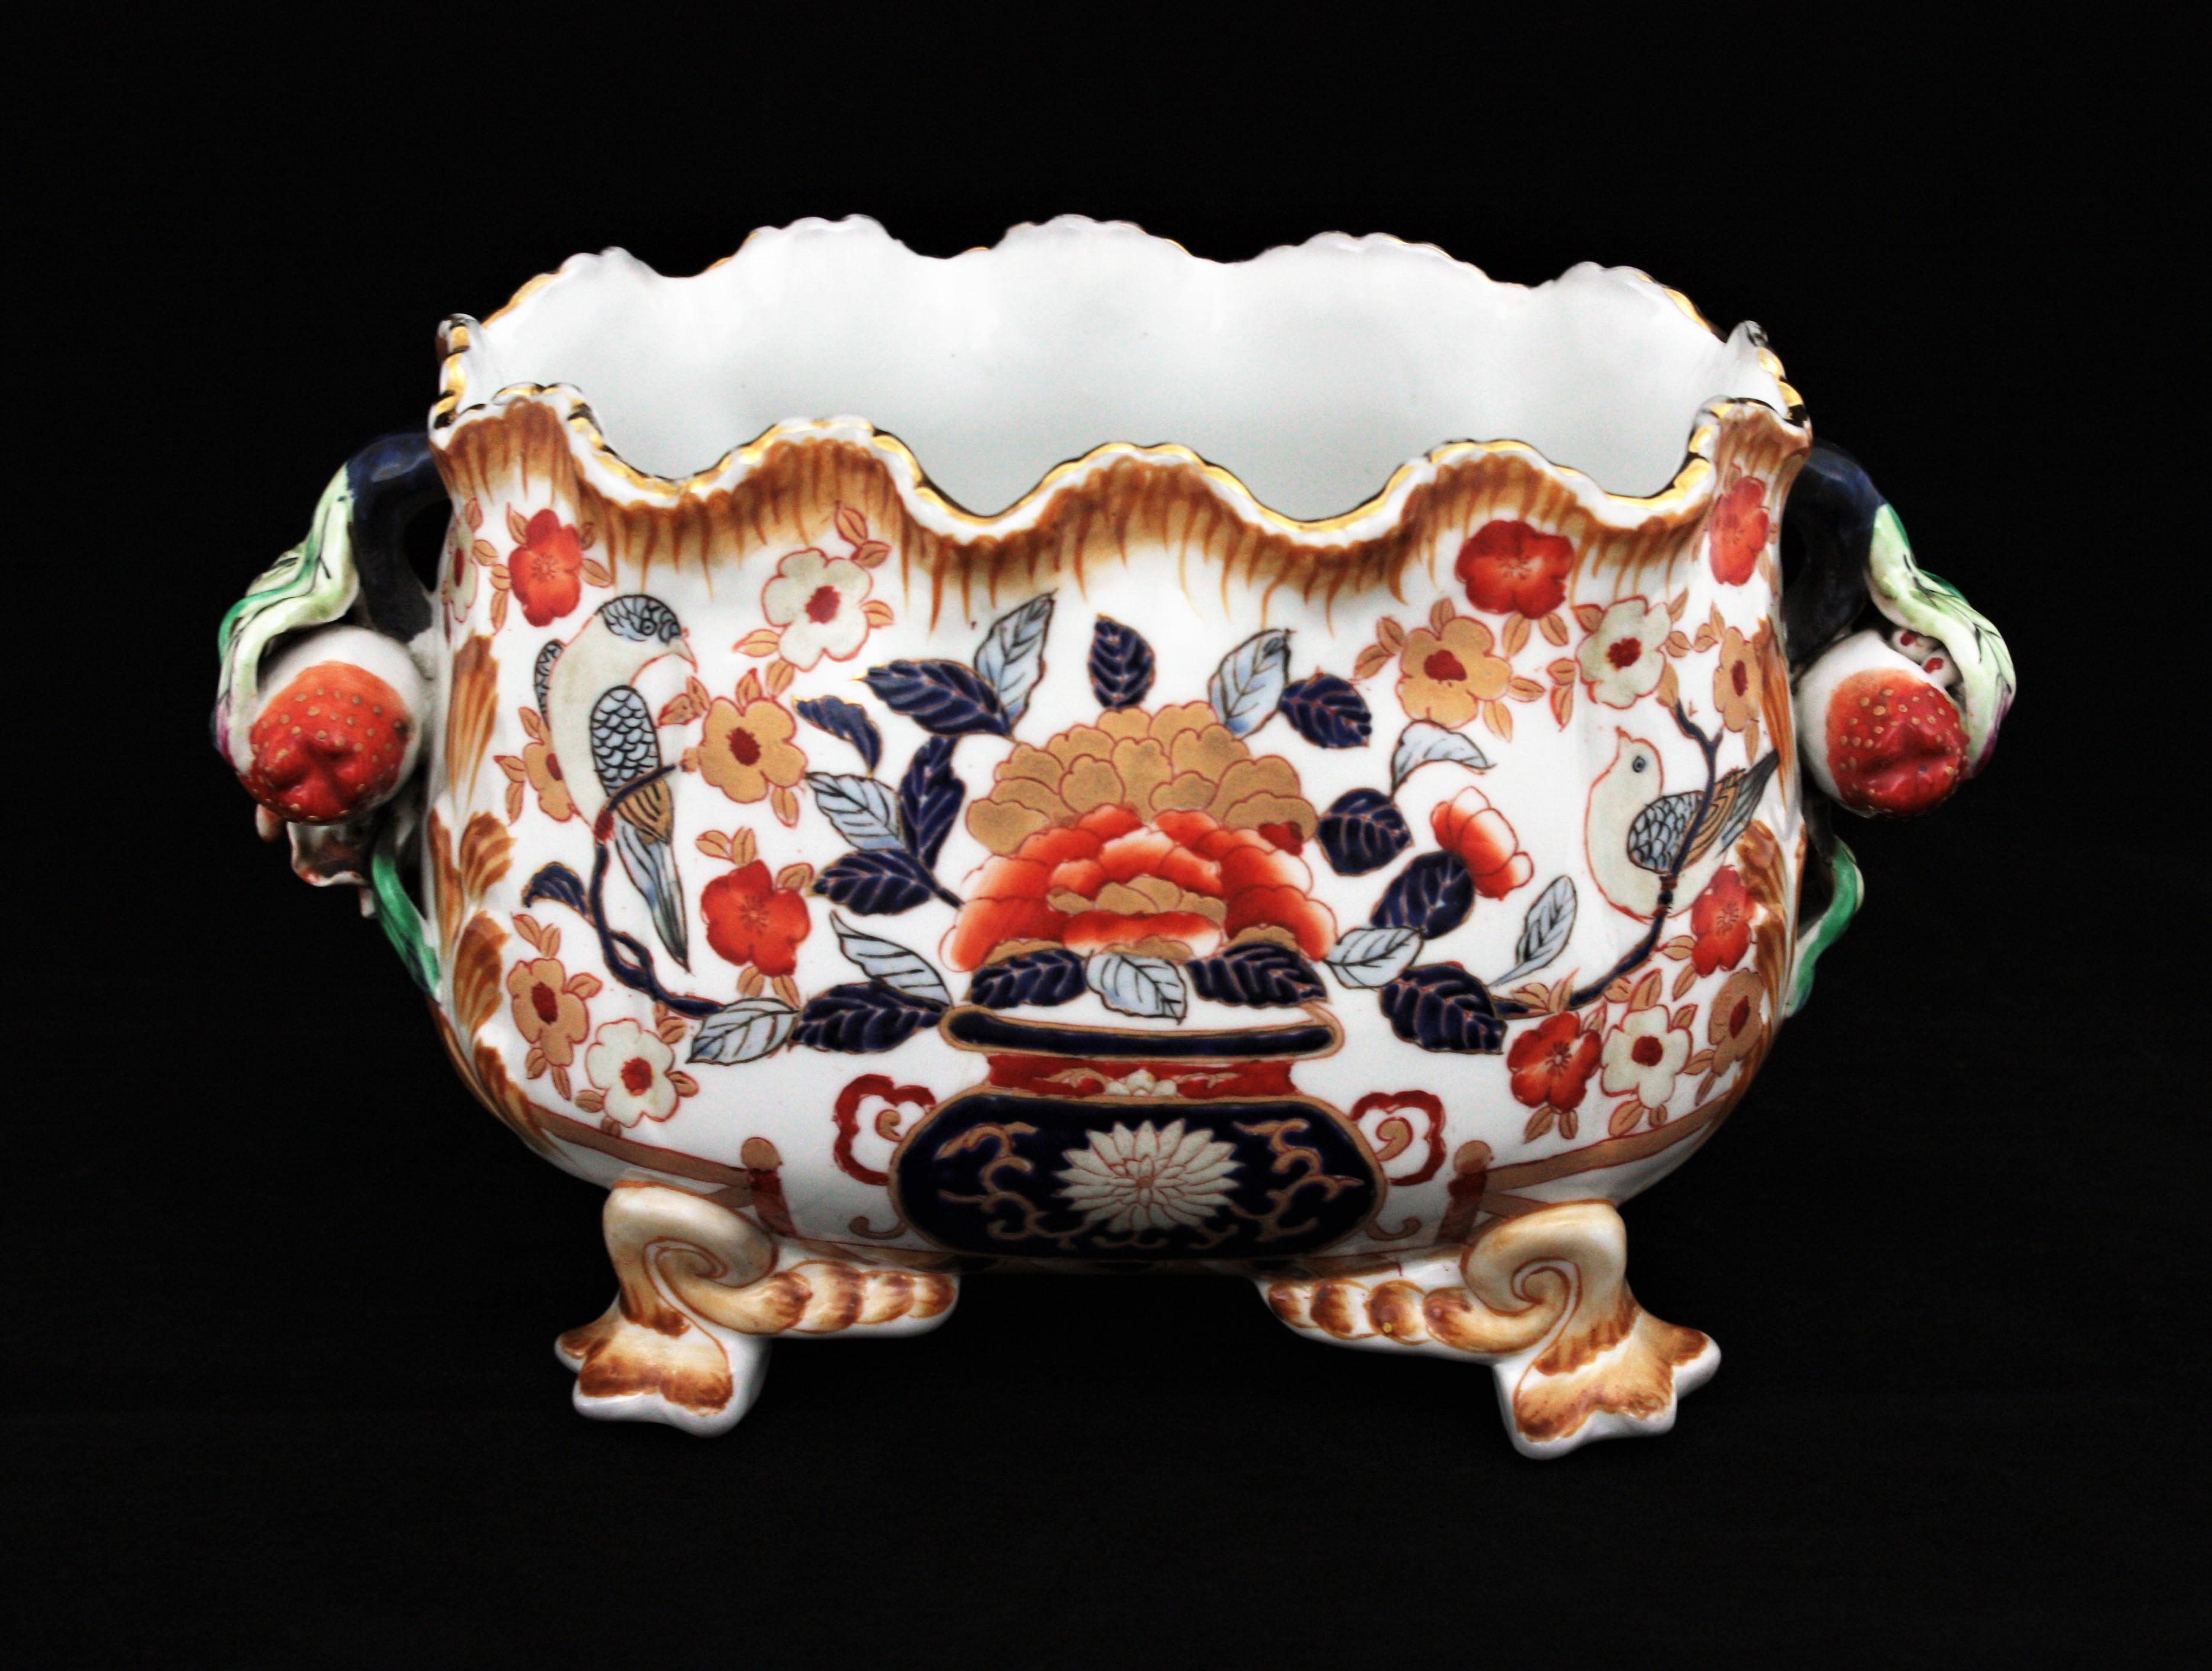 Exquis bol ou centre de table à pied festonné en porcelaine polychrome peinte à la main avec des anses en forme de fraises, Chine, années 1950.
Cette jolie coupe ovale a été fabriquée à la main en Chine vers les années 1950. Il se dresse sur quatre